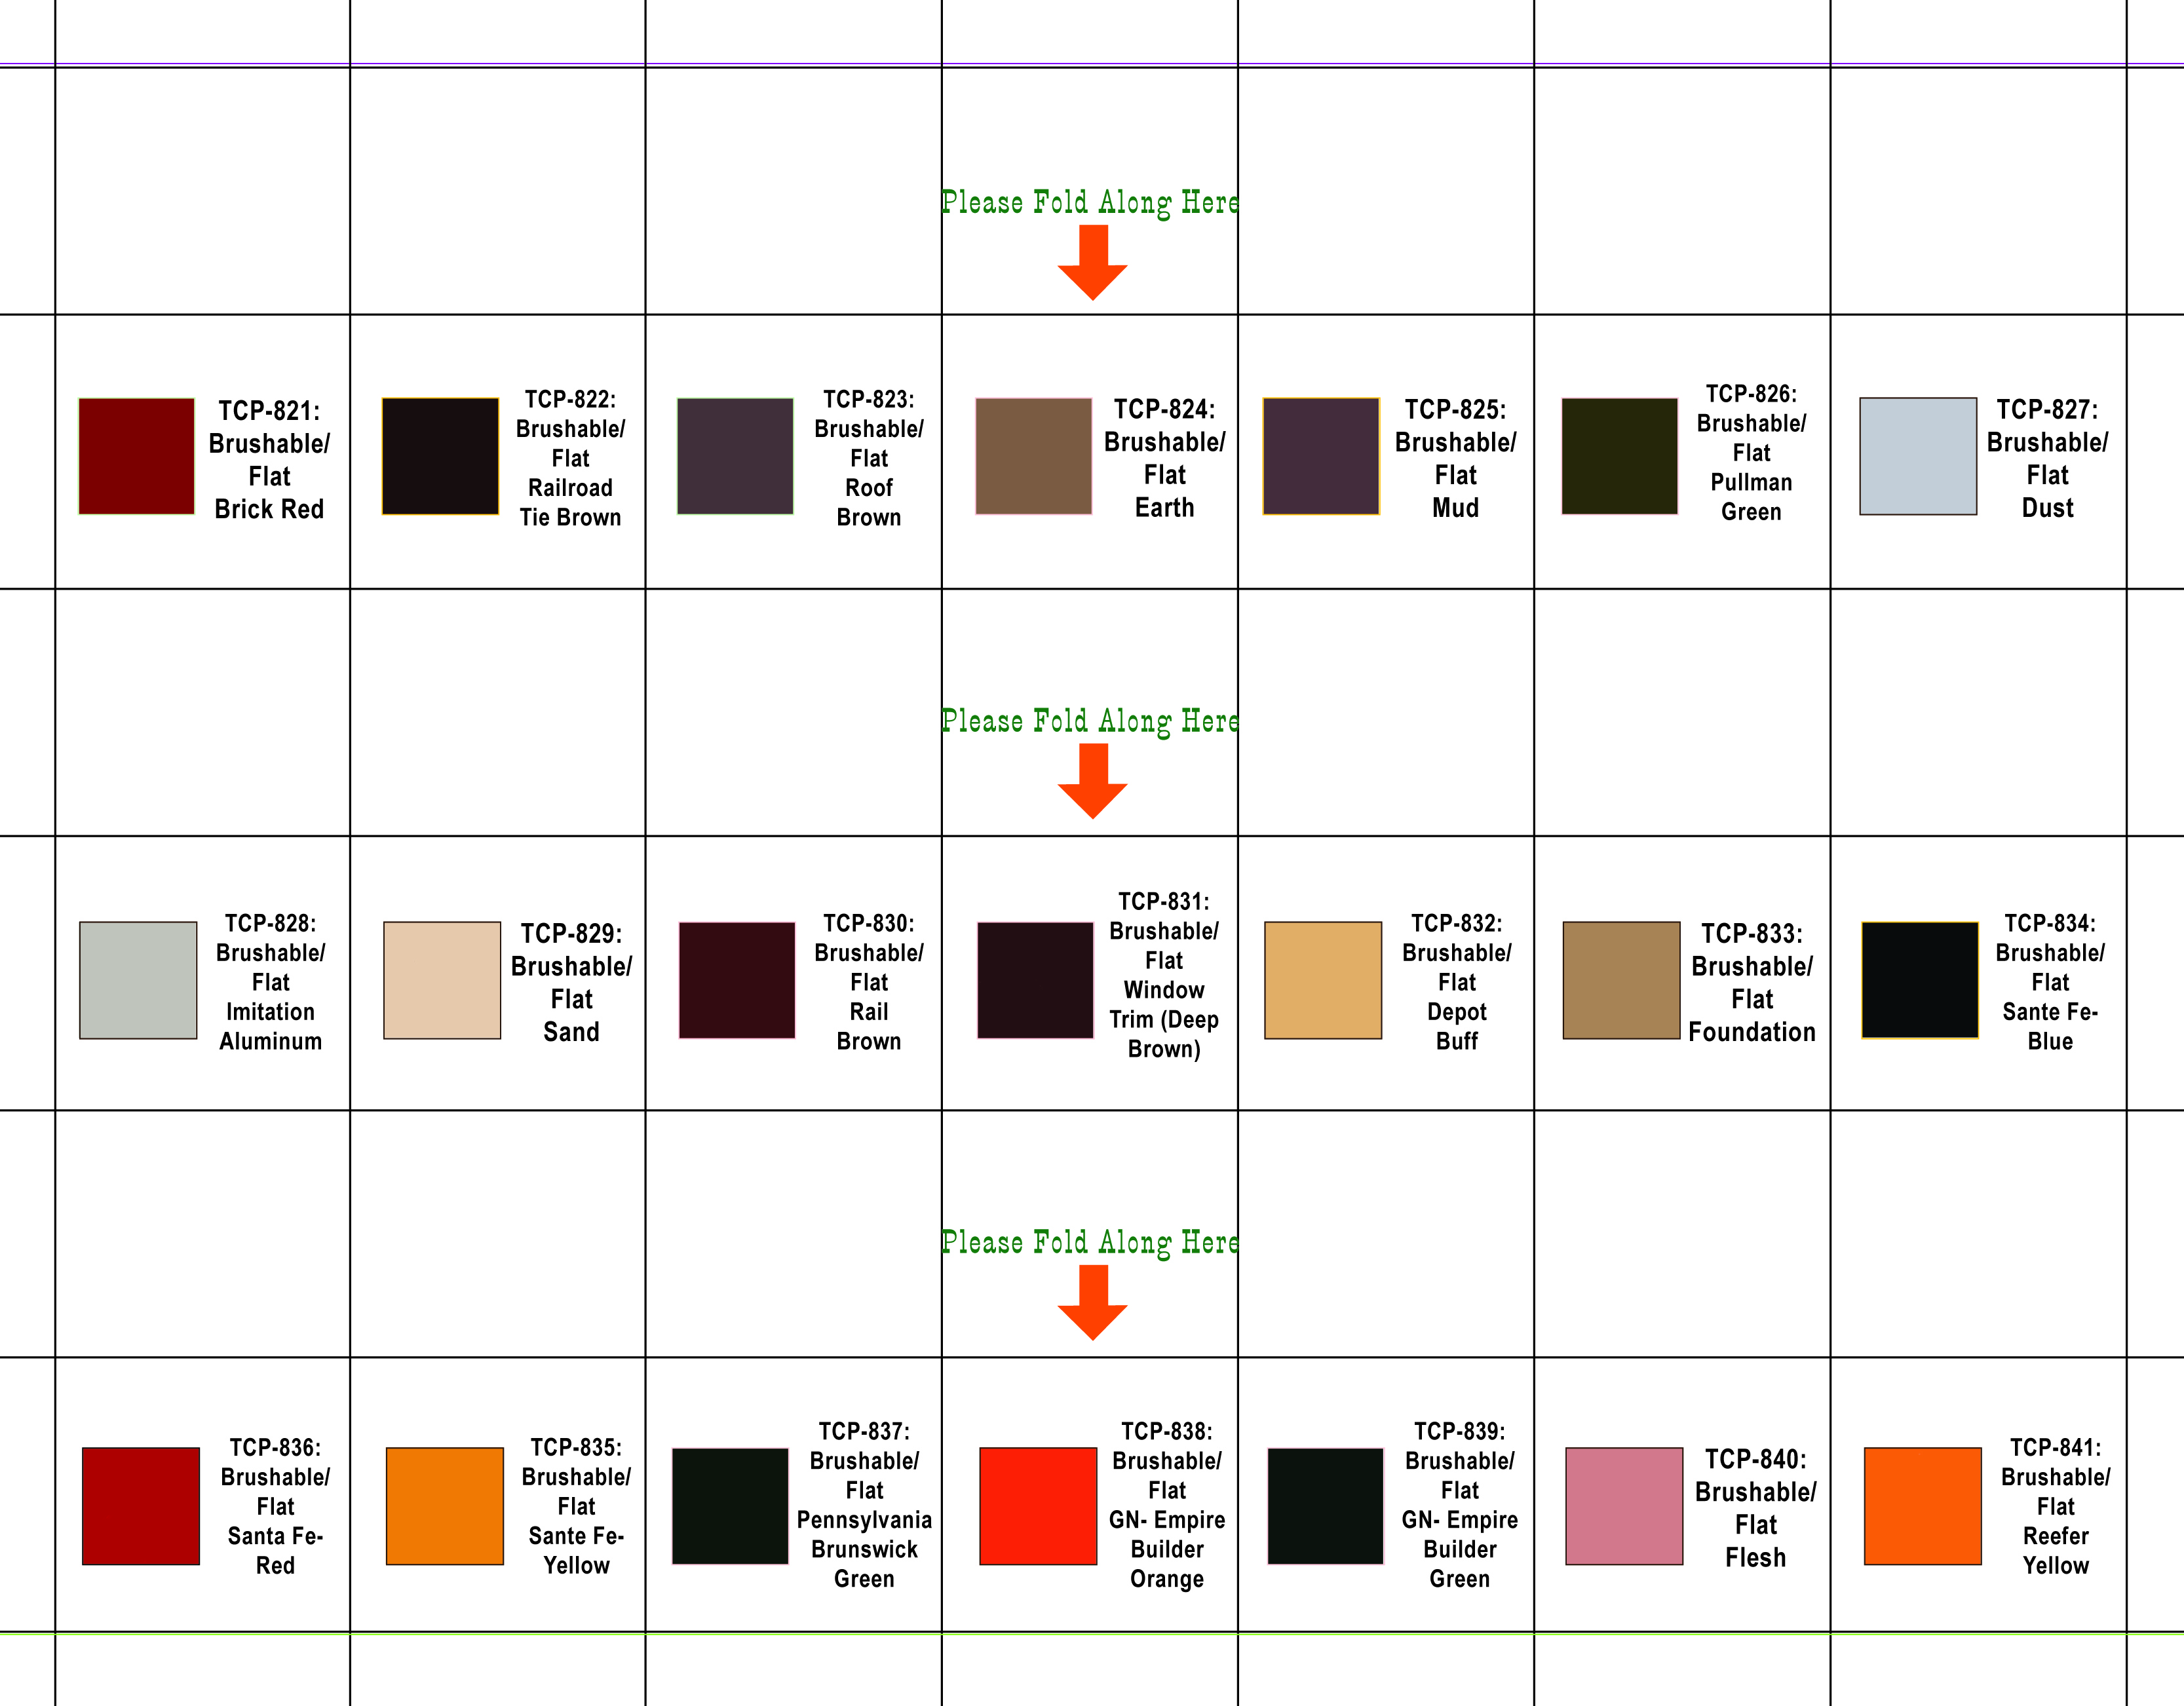 Tru Color Paint Chart